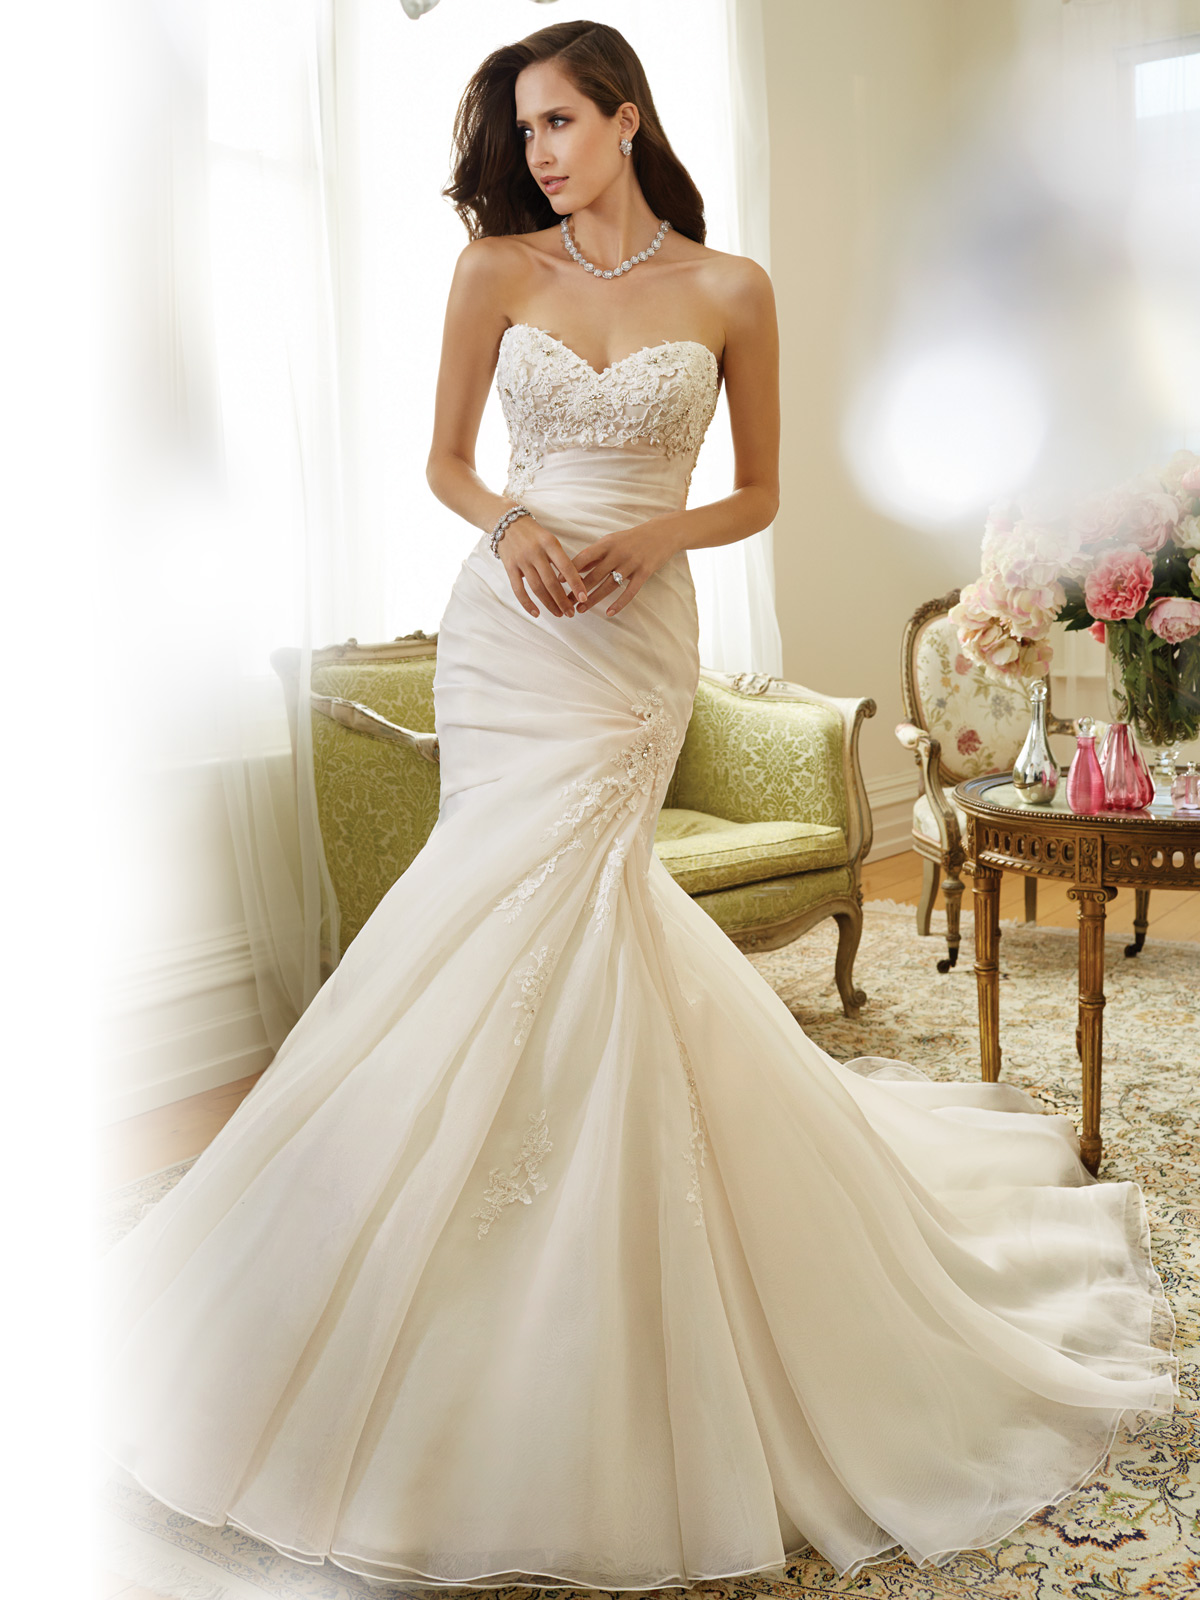 Wedding Dress - Sophia Tolli SPRING 2015 Collection - Y11556 Sparrow ...